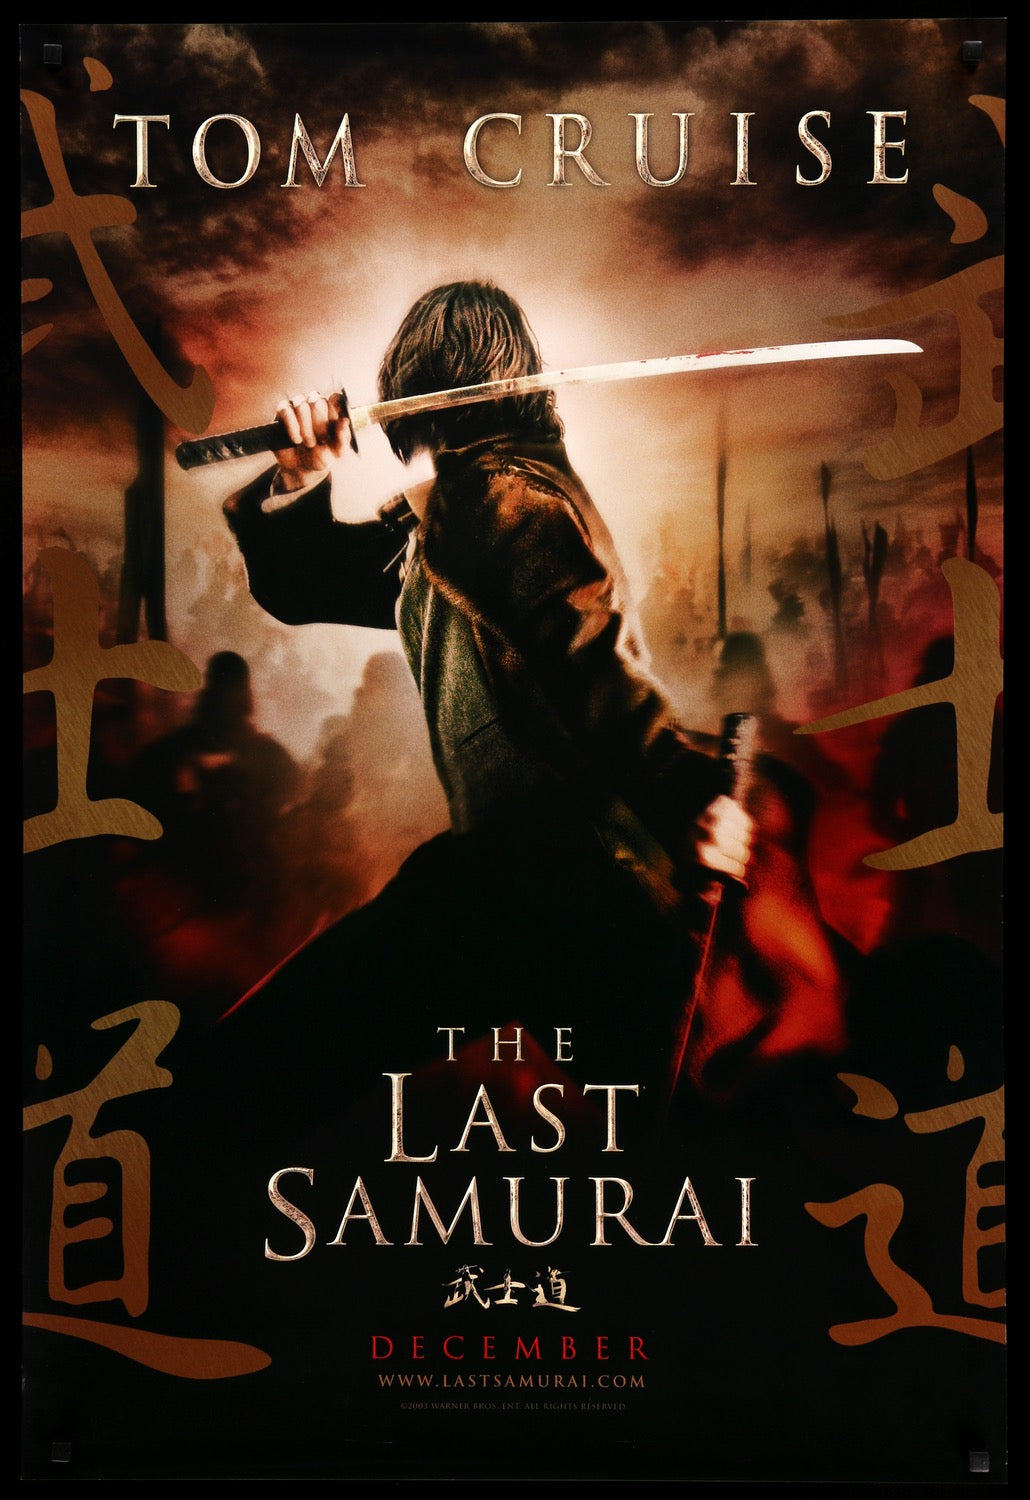 Last Samurai (2003) original movie poster for sale at Original Film Art